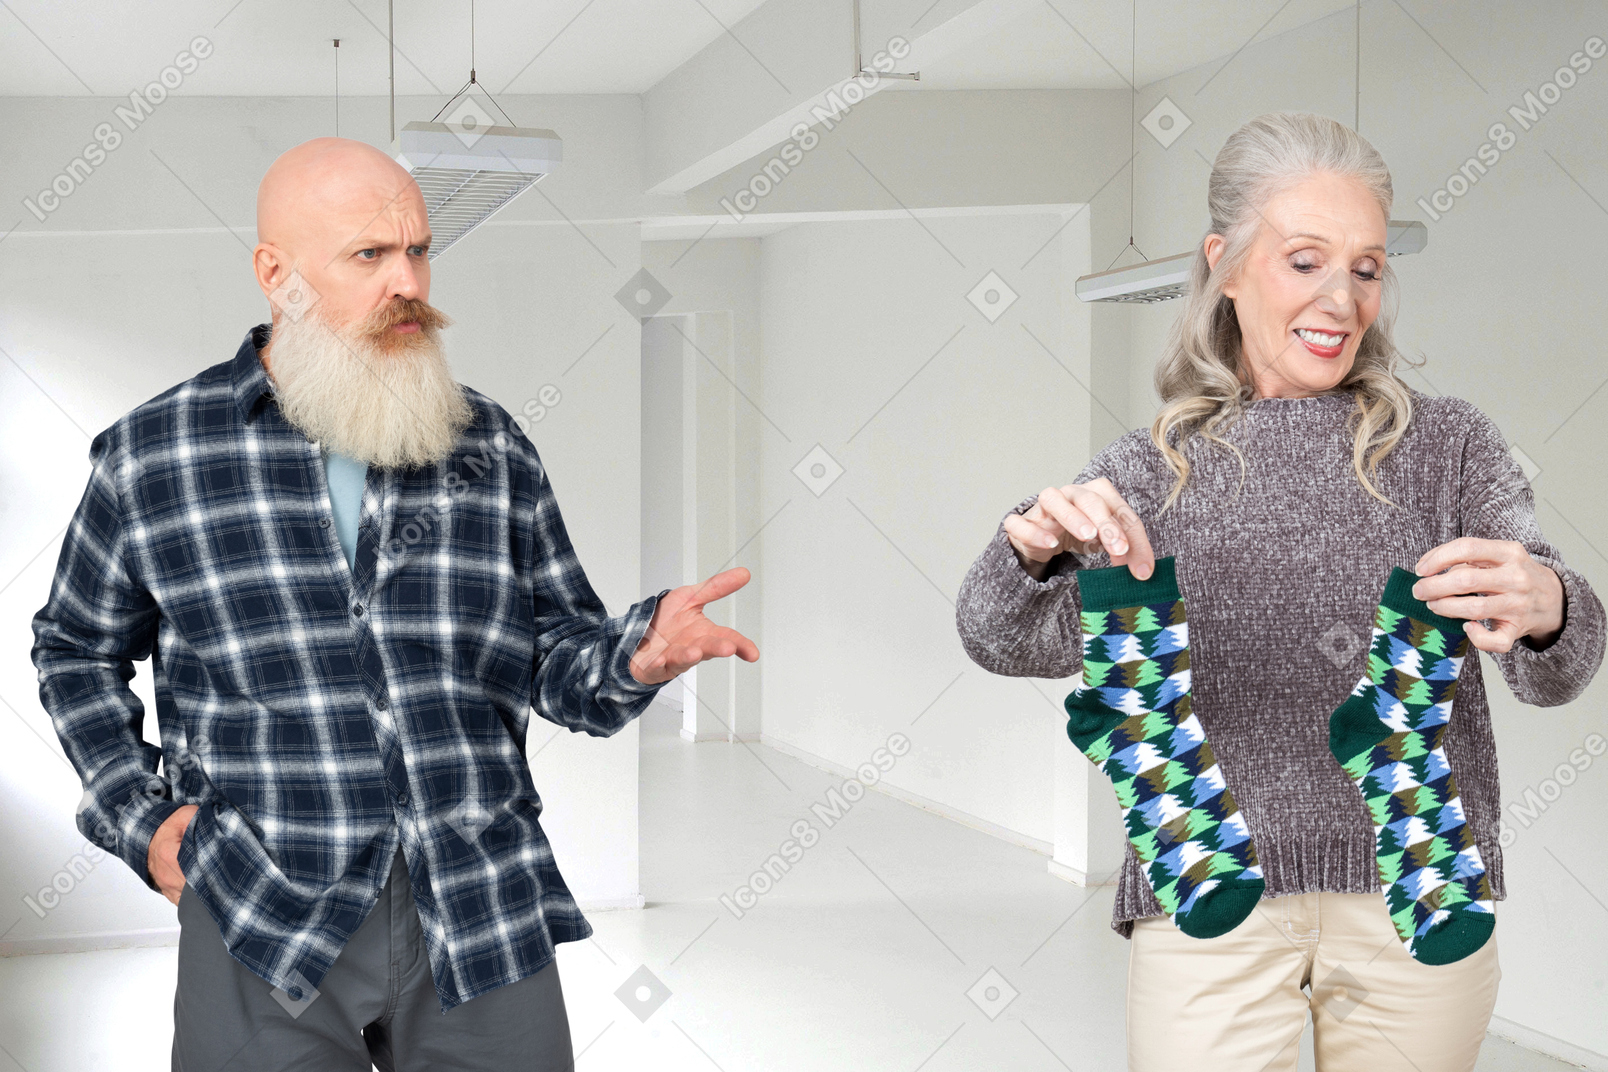 Un vecchio calvo con la barba grigia che guarda stupito una vecchia signora mentre tiene in mano un paio di calzini verdi